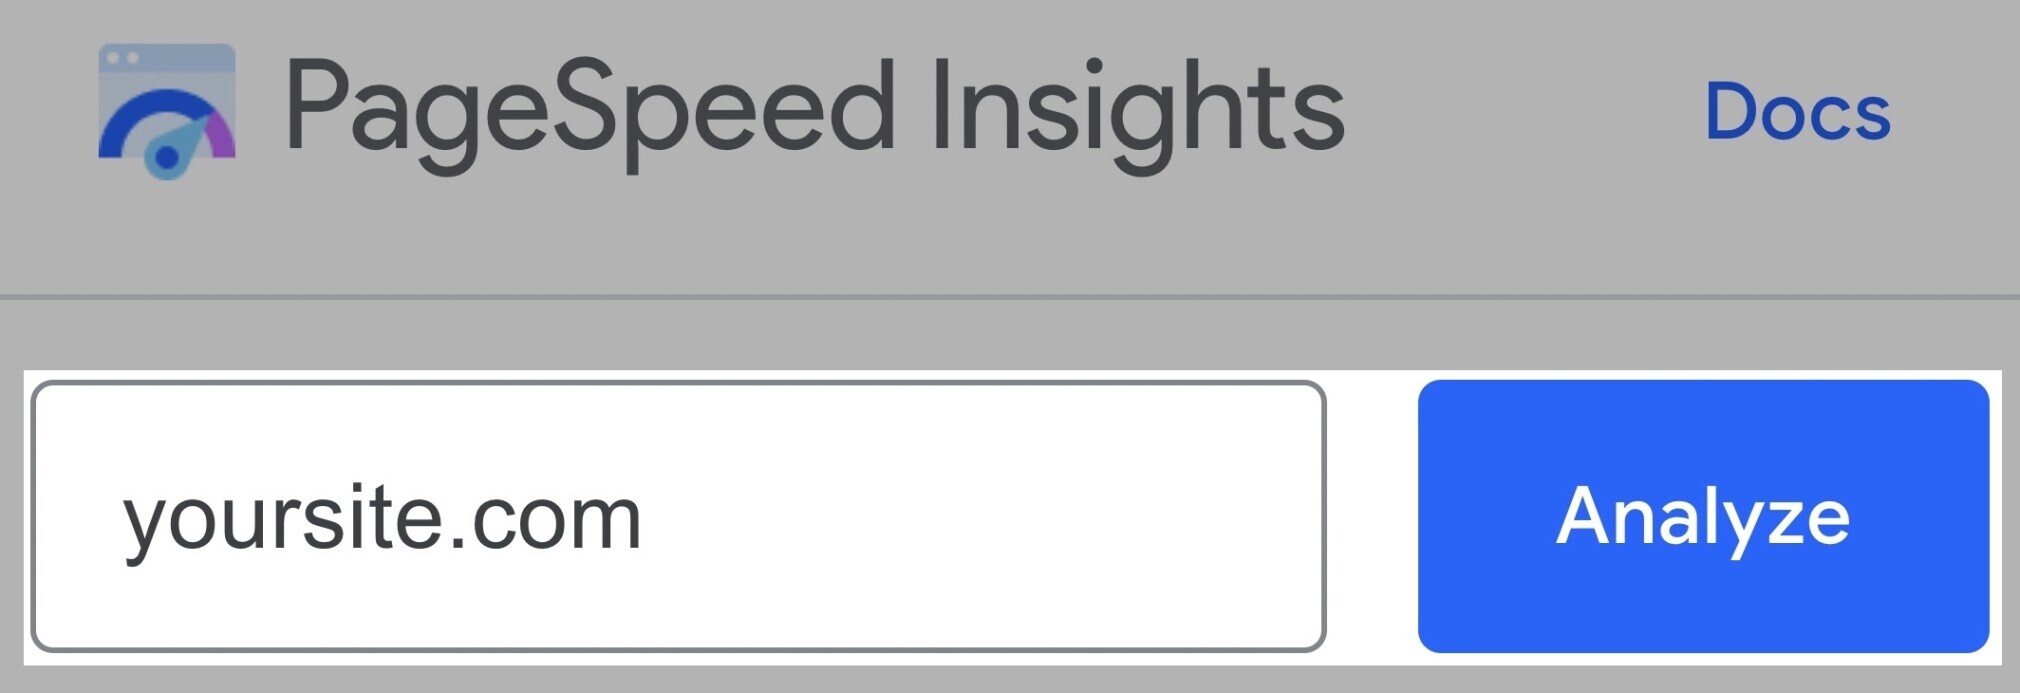 análise da ferramenta de insights de velocidade da página